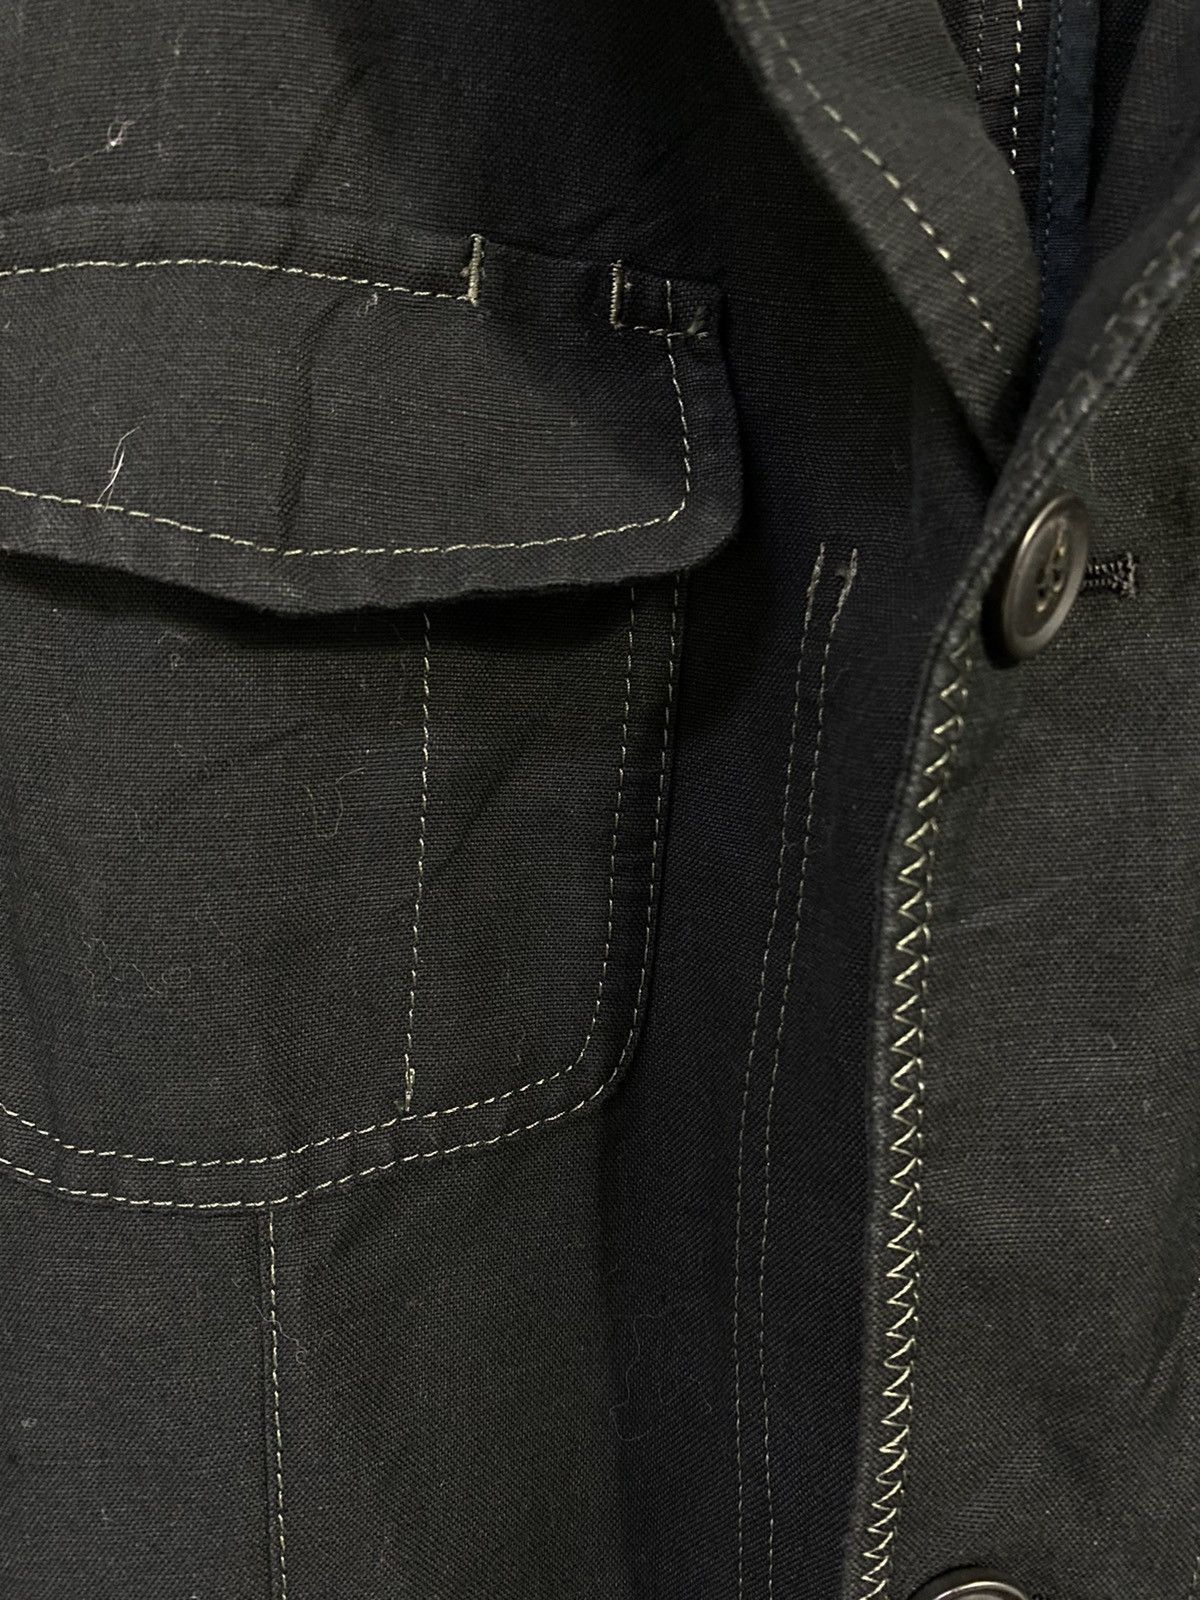 Lanvin Linen Jacket 4 Pocket Design Made in Japan - 7